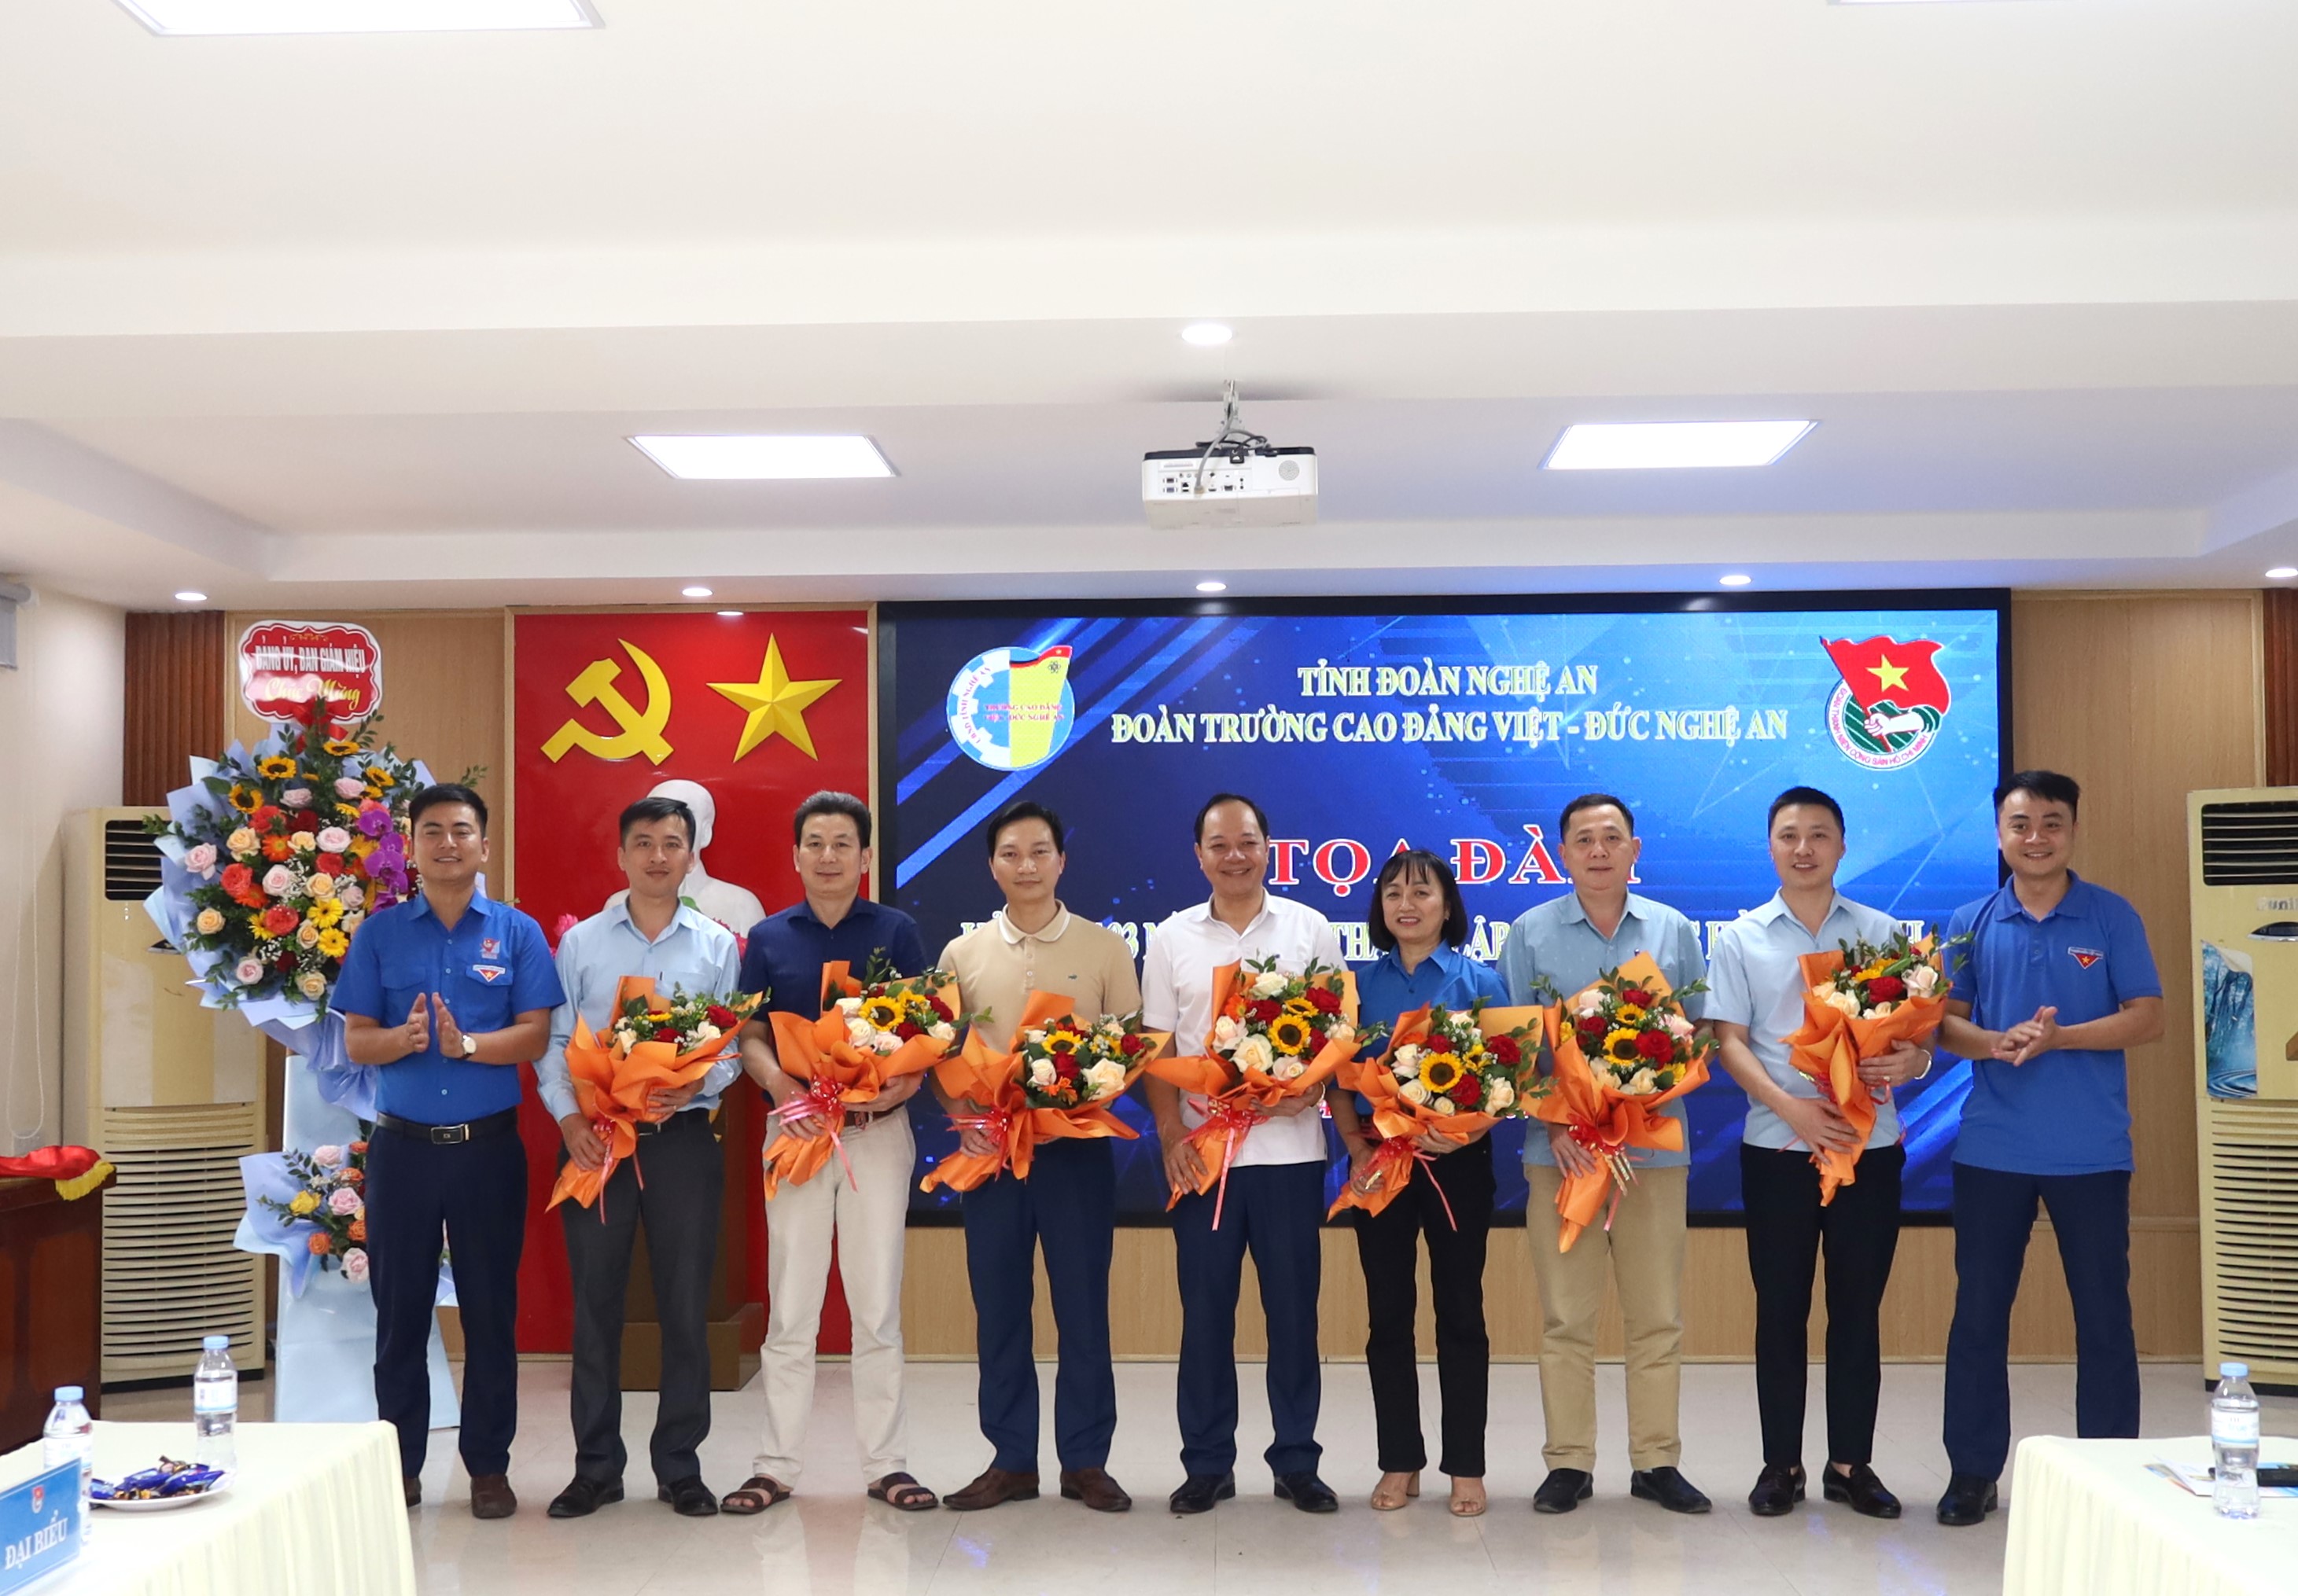   Đoàn Thanh niên Cộng sản Hồ Chí Minh Trường Cao đẳng Việt – Đức Nghệ An tổ chức tọa đàm kỷ niệm 93 năm Ngày thành lập Đoàn Thanh niên Cộng sản Hồ Chí Minh